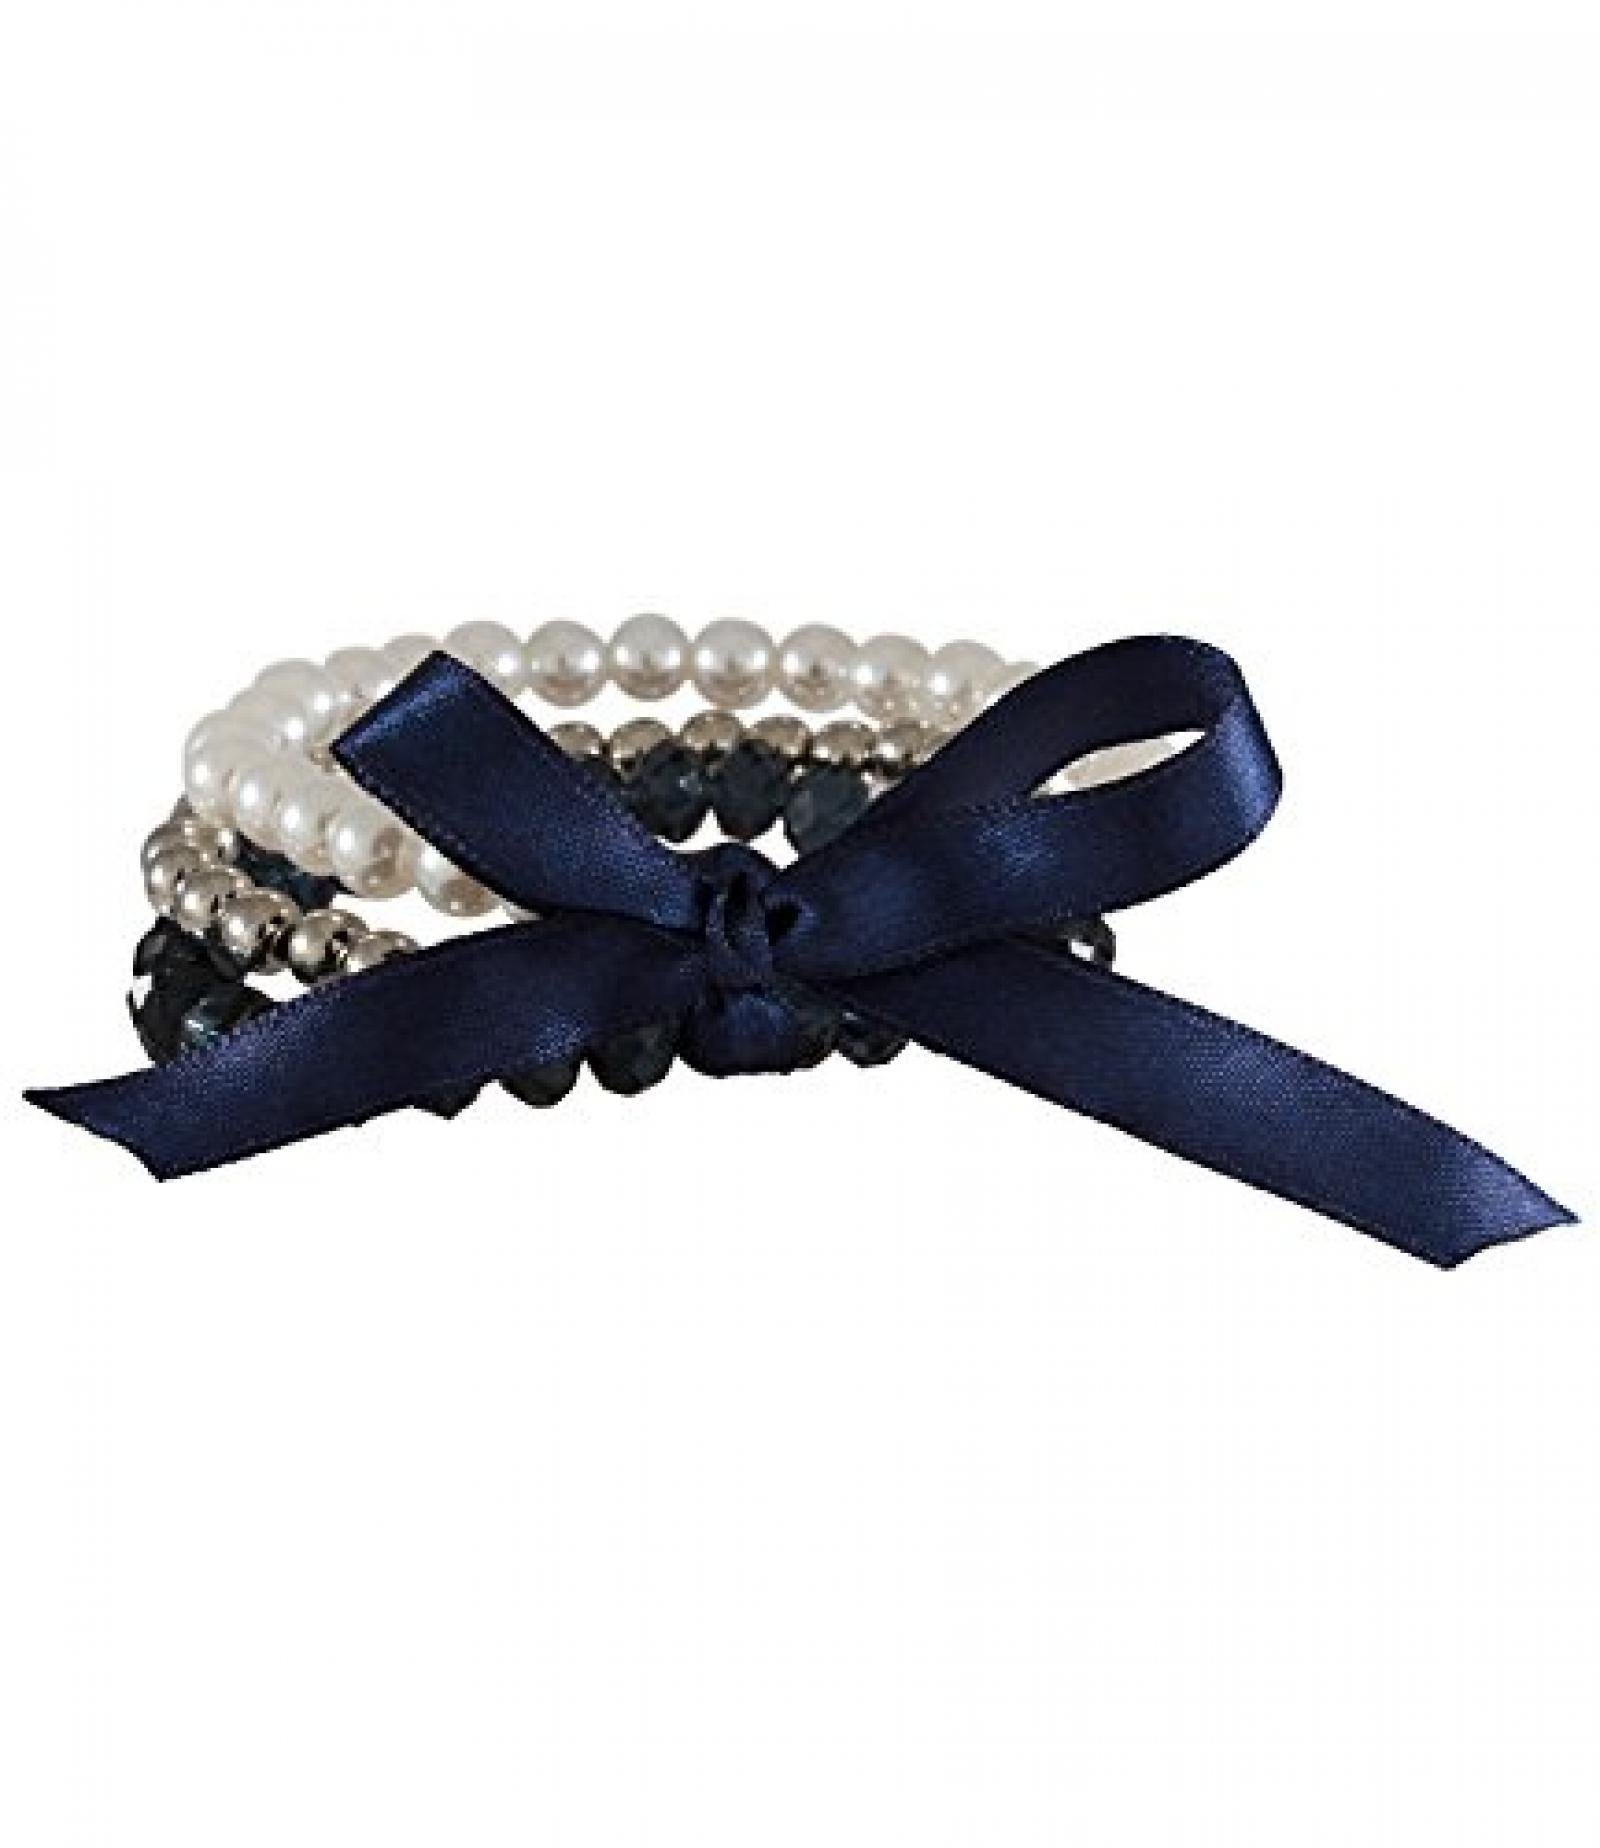 SIX "Glory Empire" drei weiß-silber-blaue Perlen Armbänder mit Schleife (399-043) 